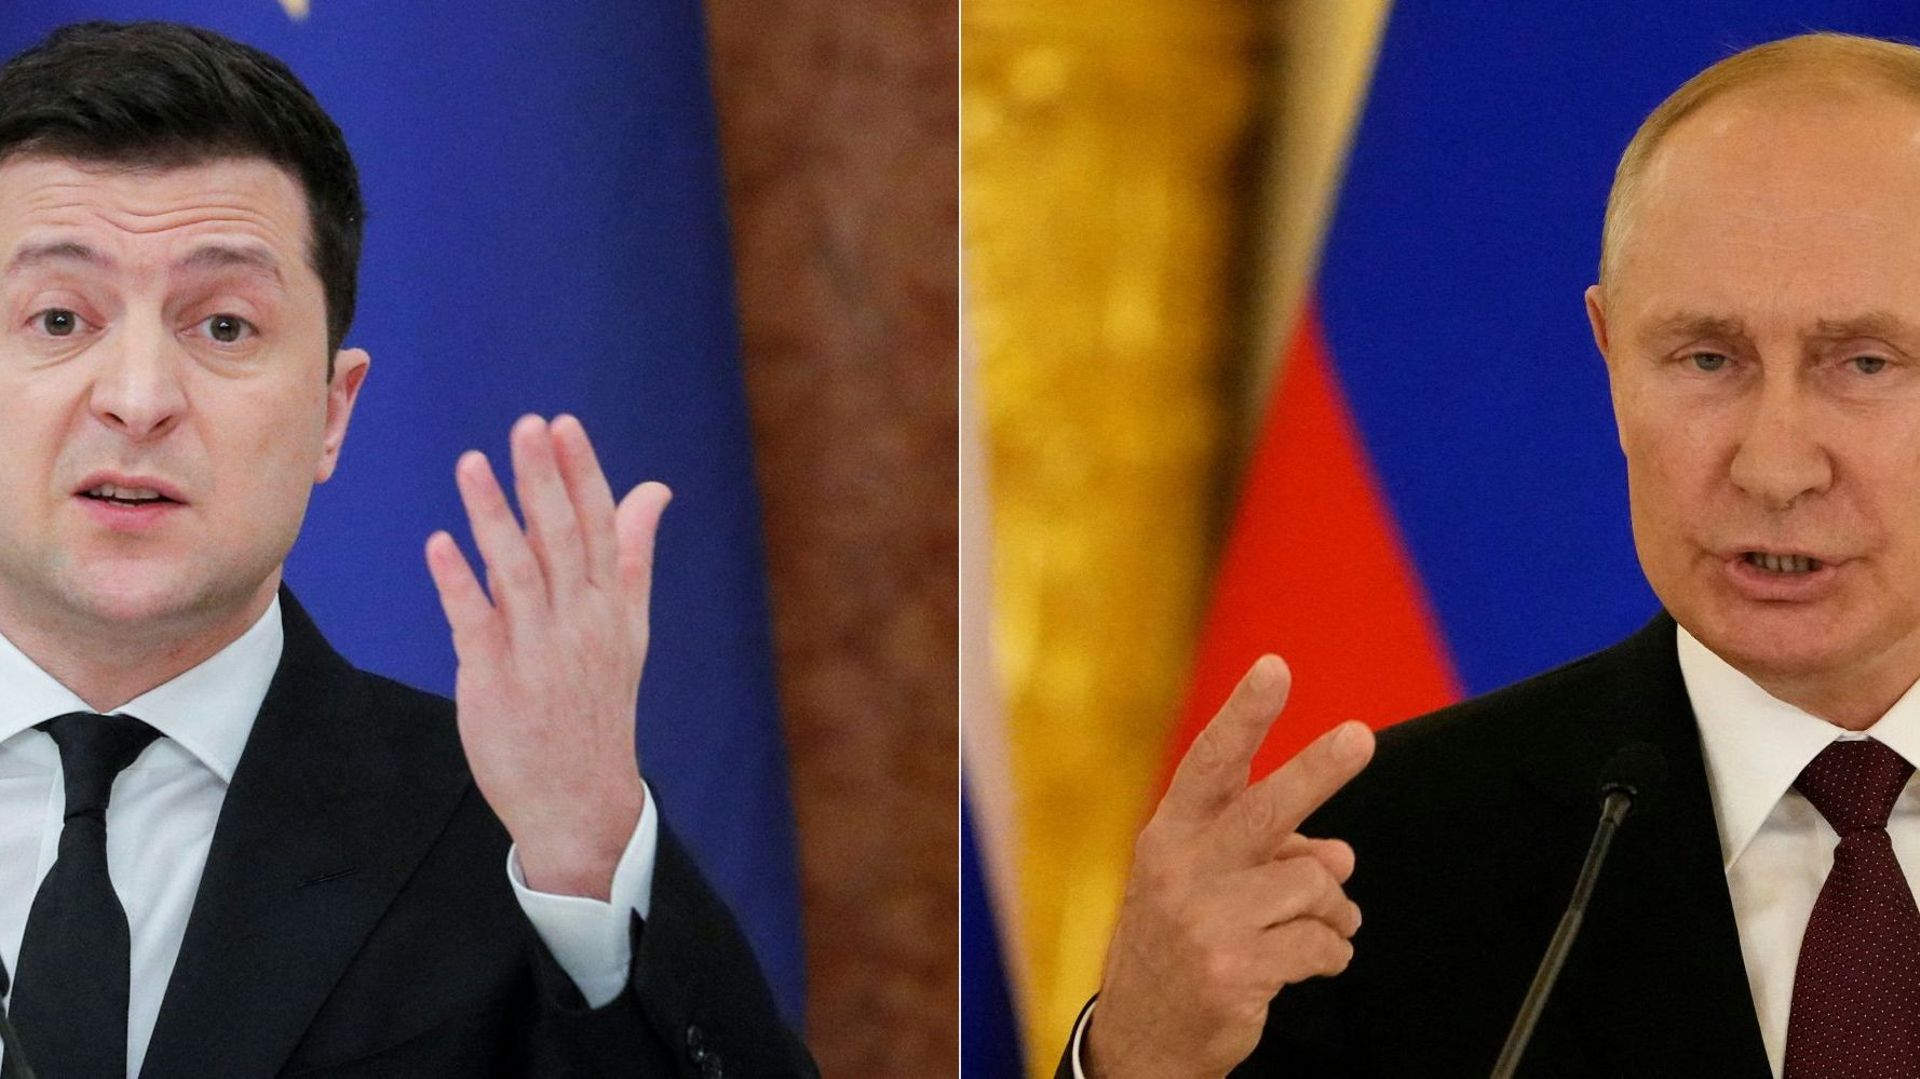 À gauche, le président ukrainien Volodymyr Zelensky. À droite, le président russe Vladimir Poutine.